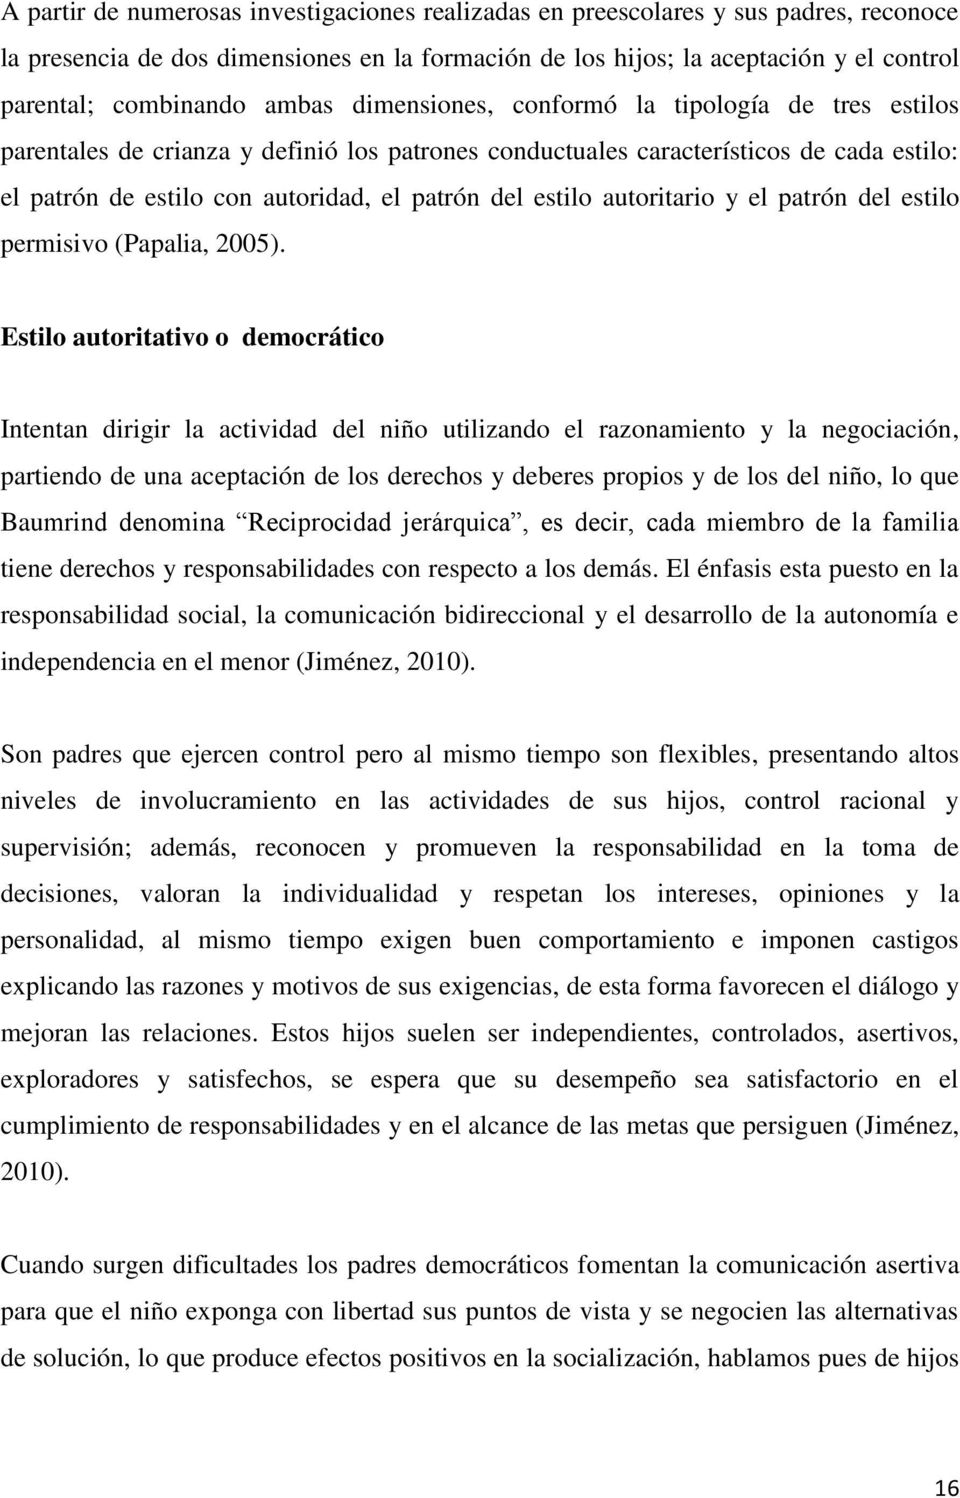 estilo autoritario y el patrón del estilo permisivo (Papalia, 2005).